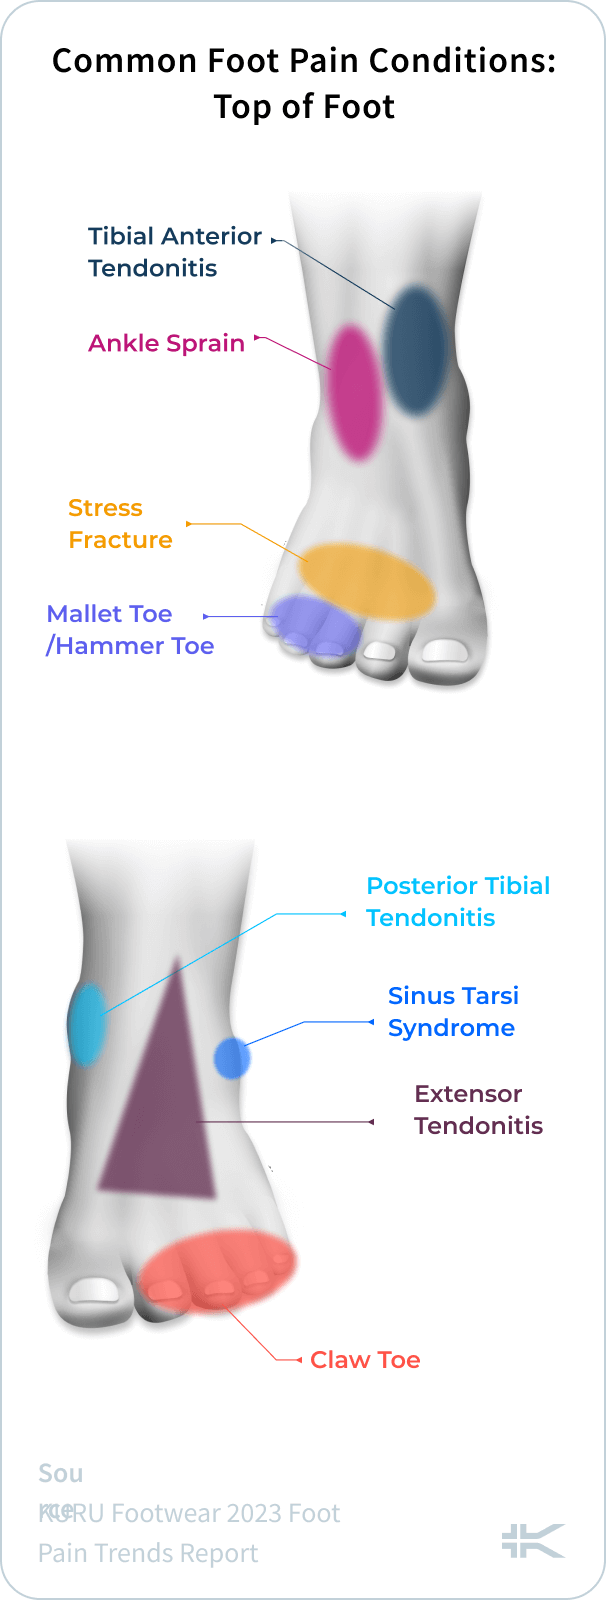 https://kuruexpertscorner.com/wp-content/uploads/2023/04/Common-Foot-Pain-Conditions_-Top-of-Foot-1-284x750.png